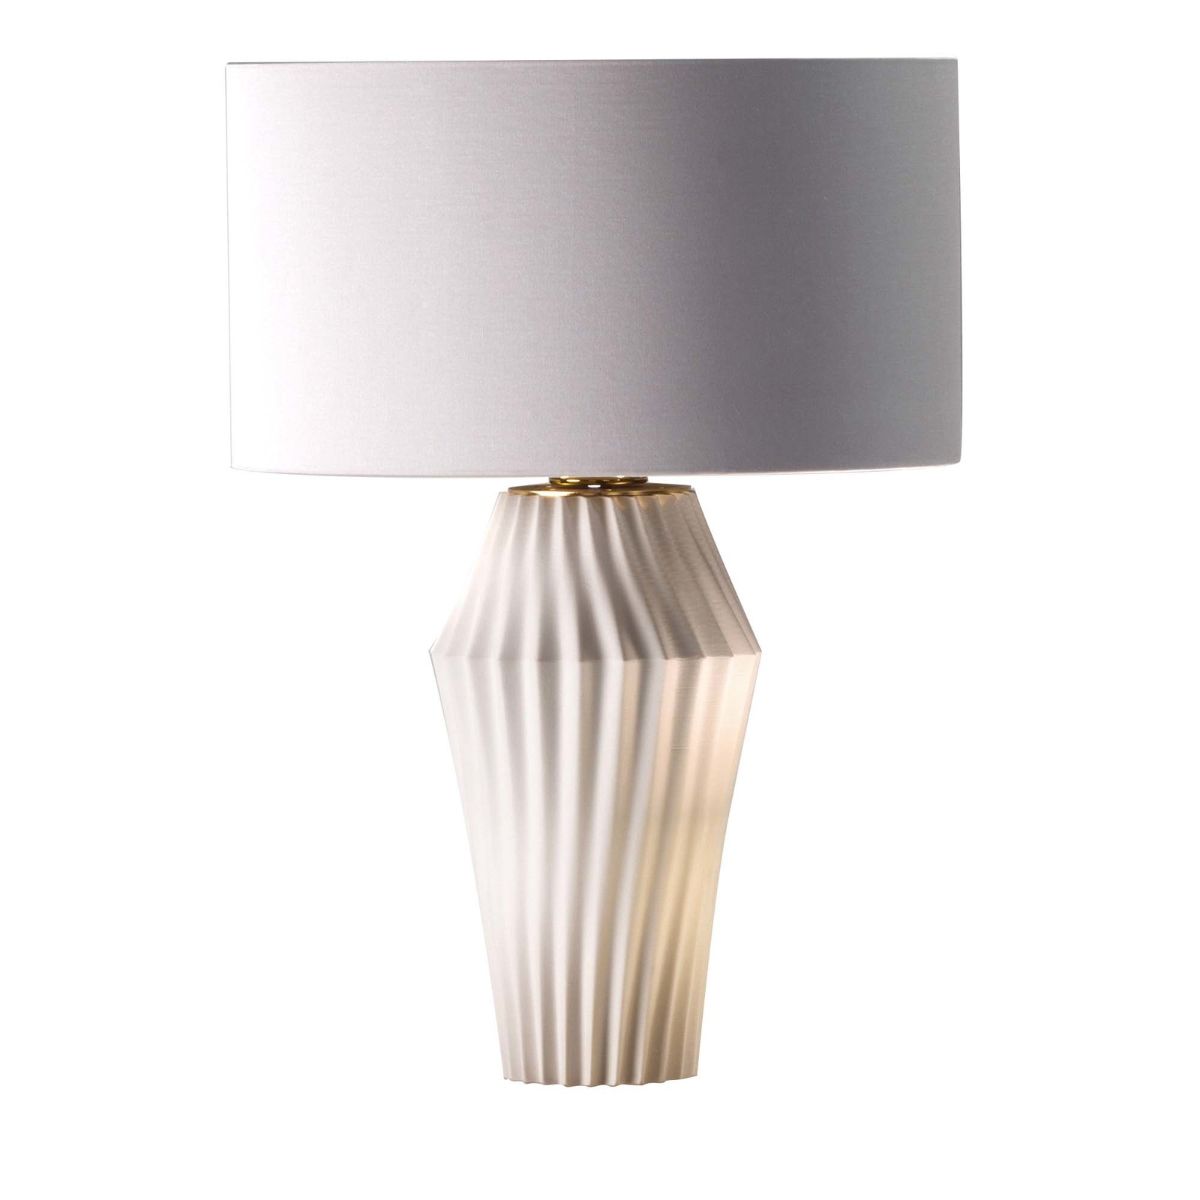 Vertigo Table Lamp - White 